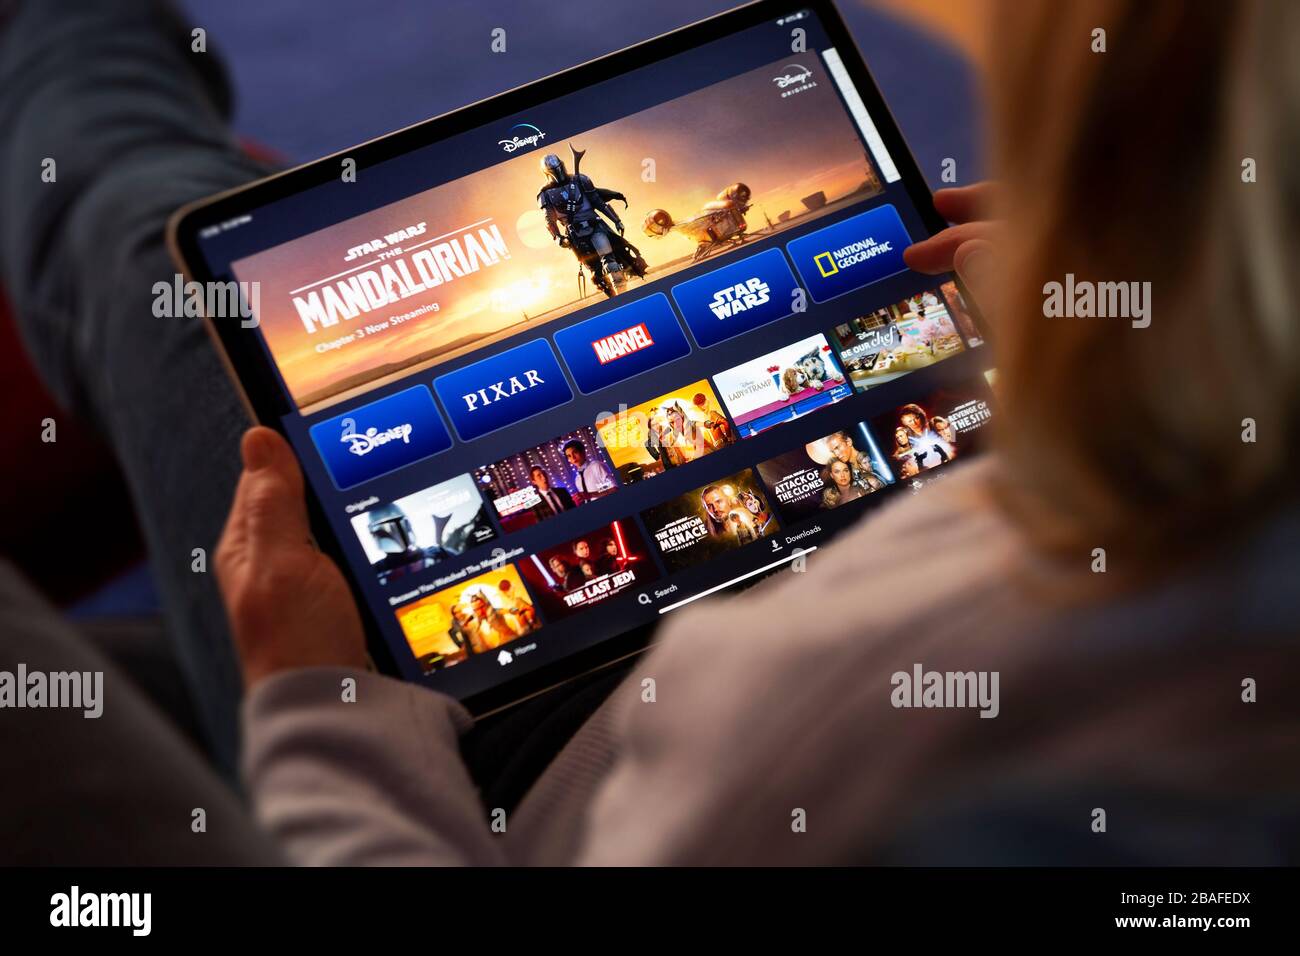 BATH, Reino Unido - 27 DE MARZO de 2020 : persona anónima mirando la aplicación Disney+ en un iPad de Apple. Foto de stock